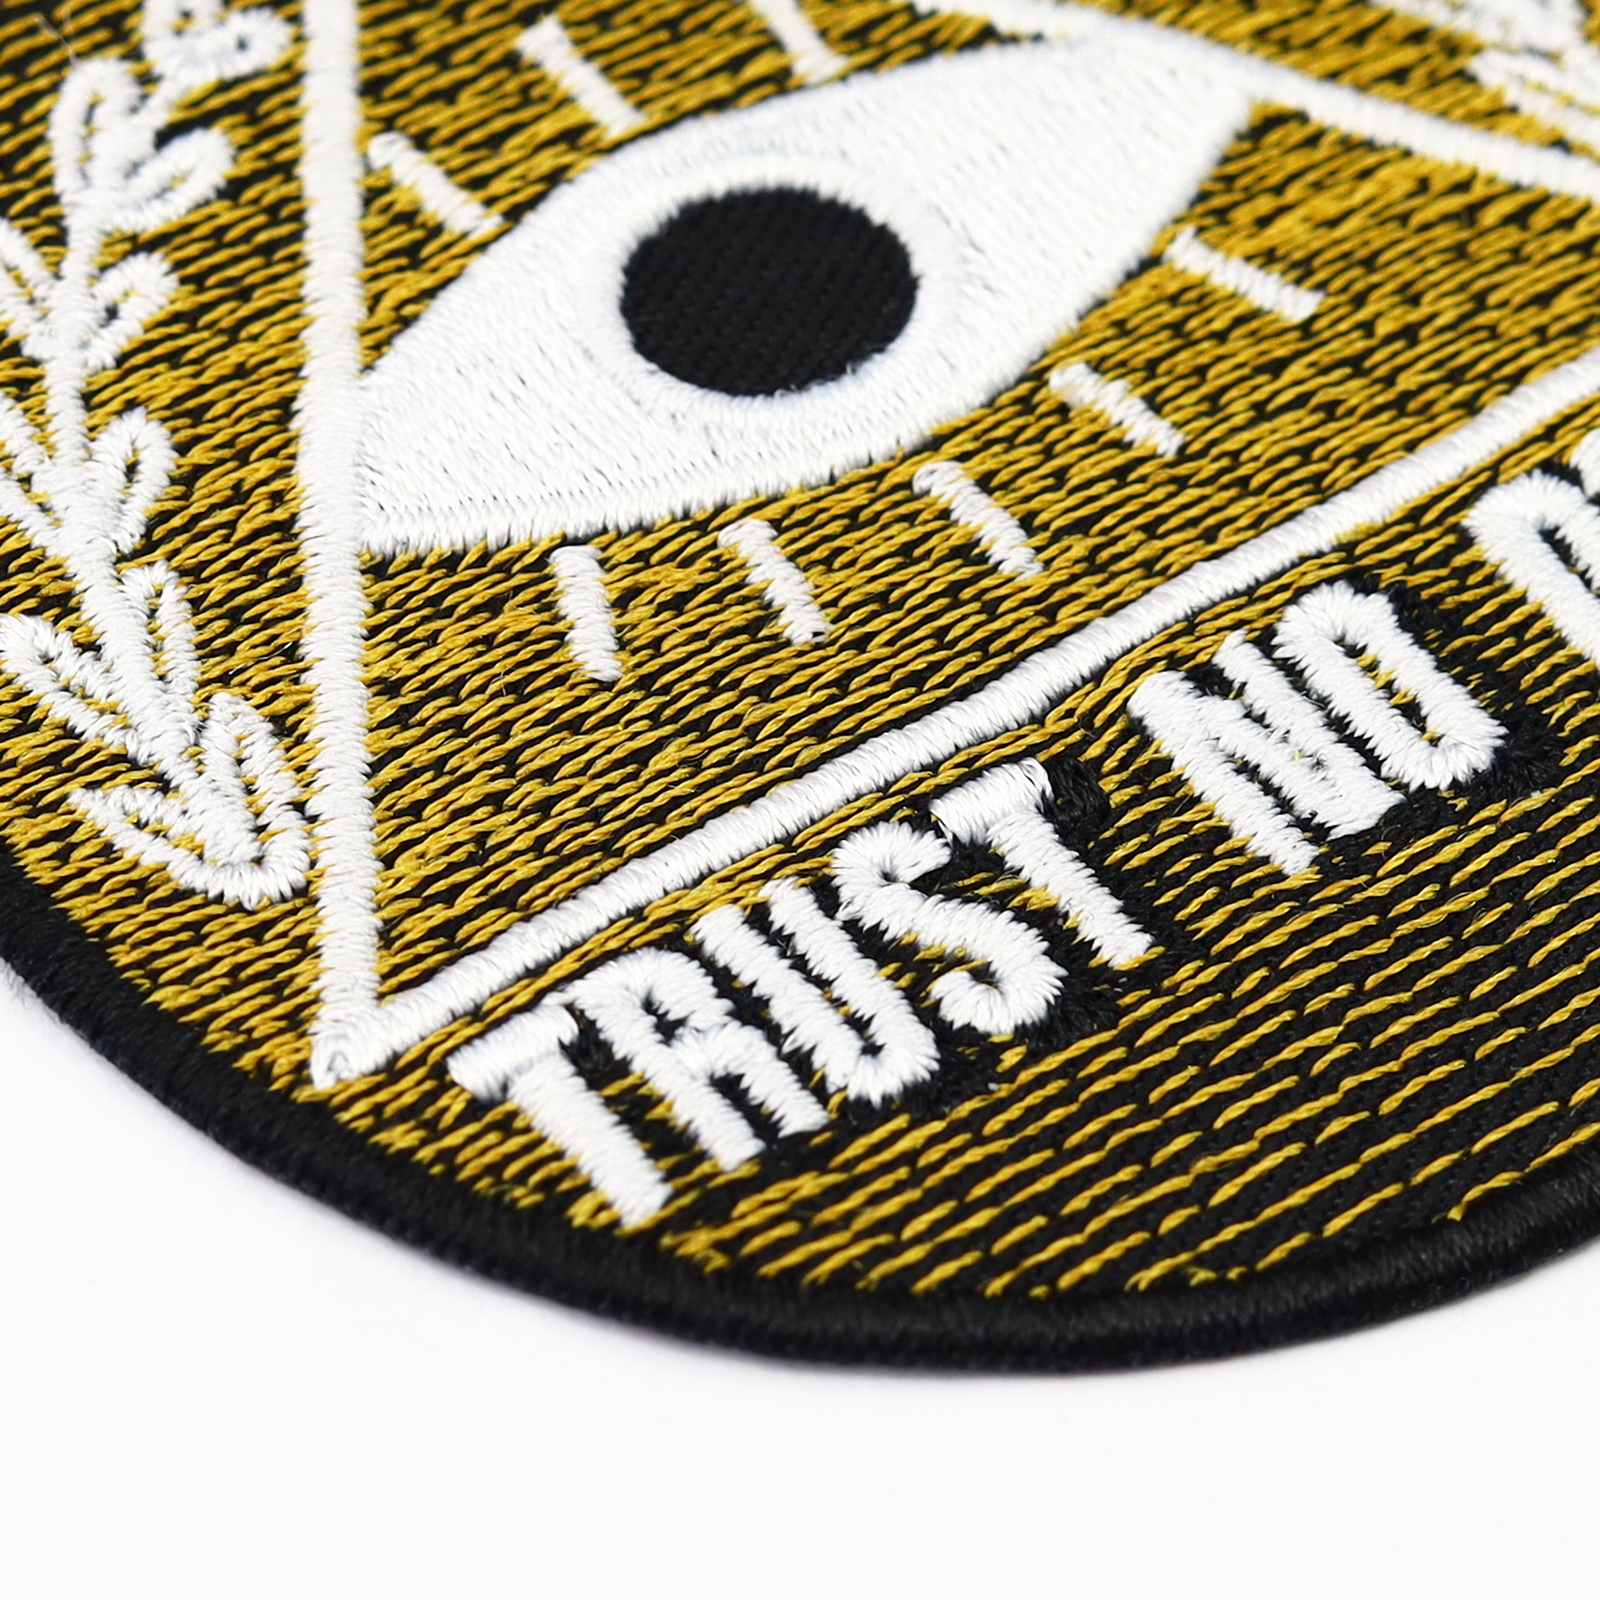 Trust no one - das Auge der Vorsehung - Patch